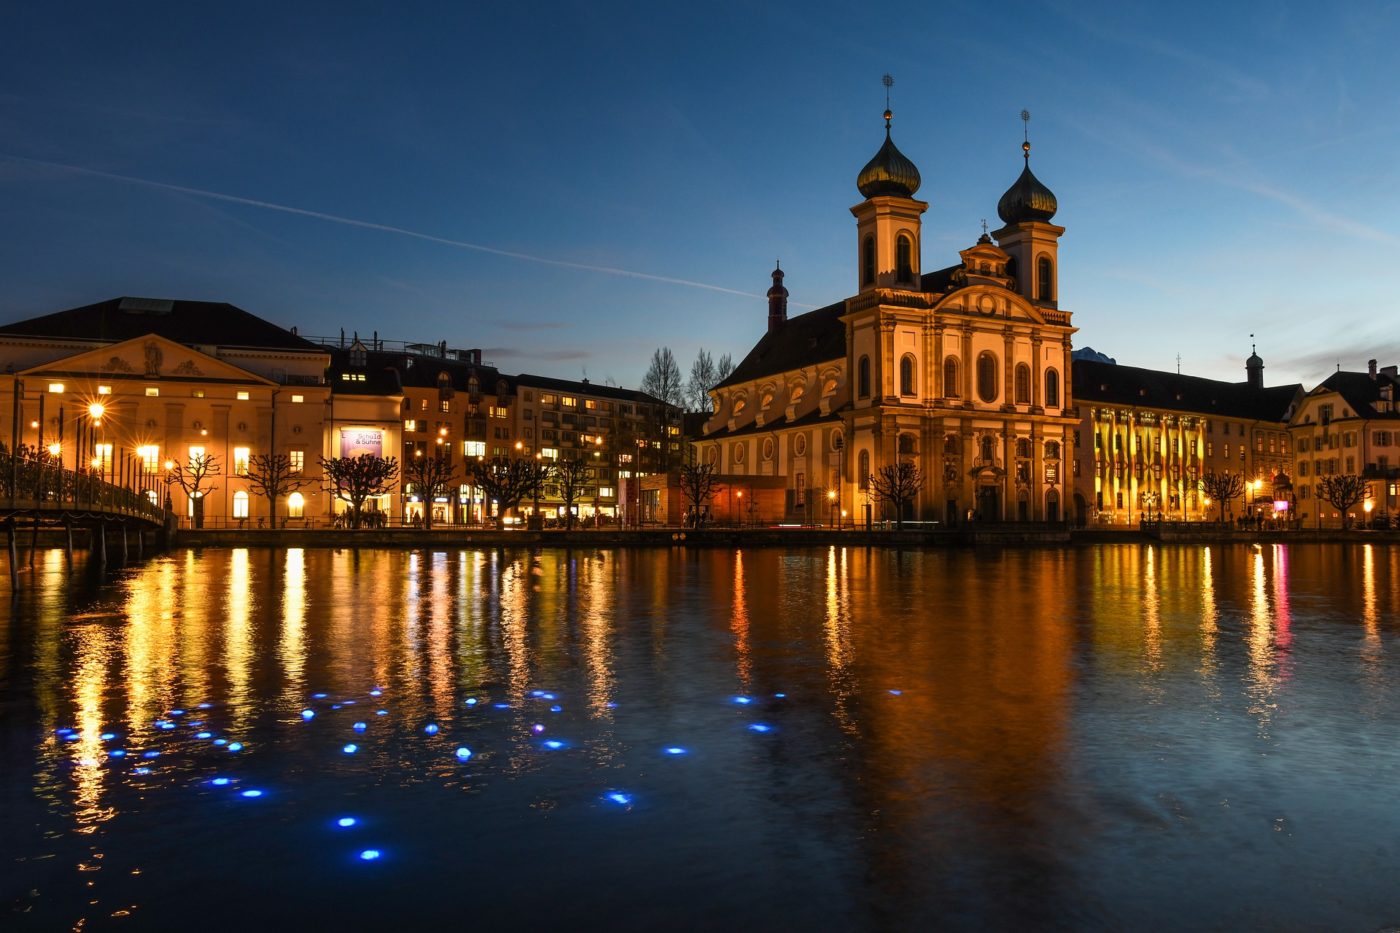 Nicht nur für Touristen ein Highlight: Luzern hat einen neuen Cityguide